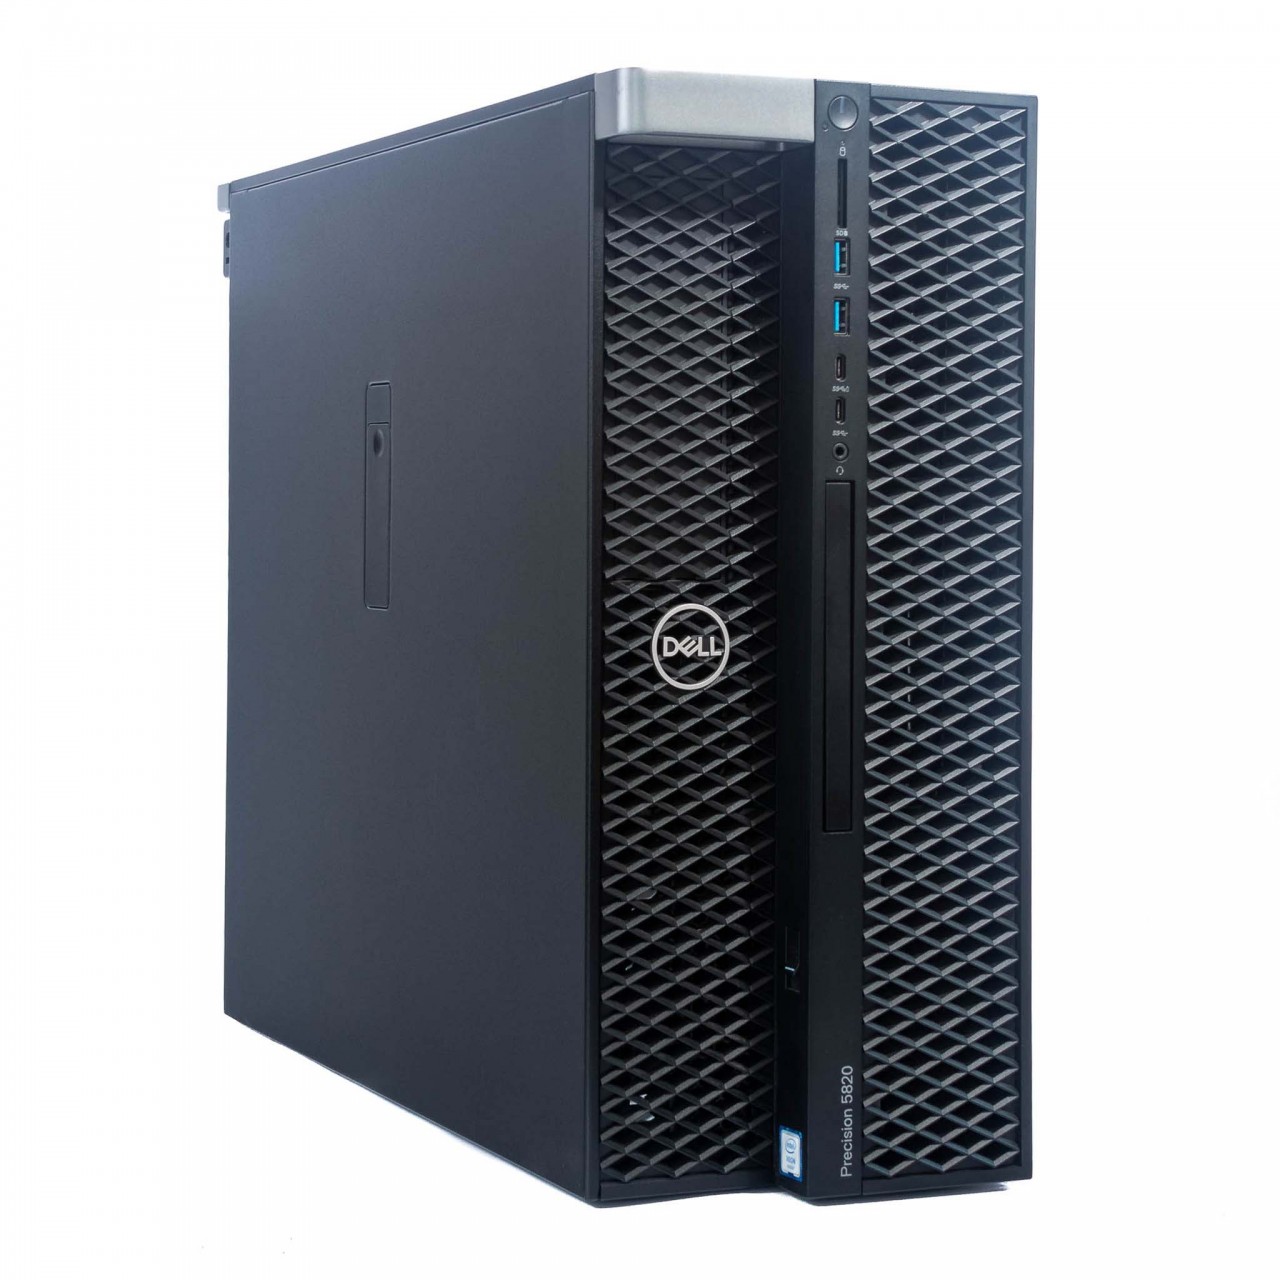 Dell Precision Tower 5820 Intel Xeon W-2133 | 16GB RAM DDR4 | 256GB SSD + 500GB HDD